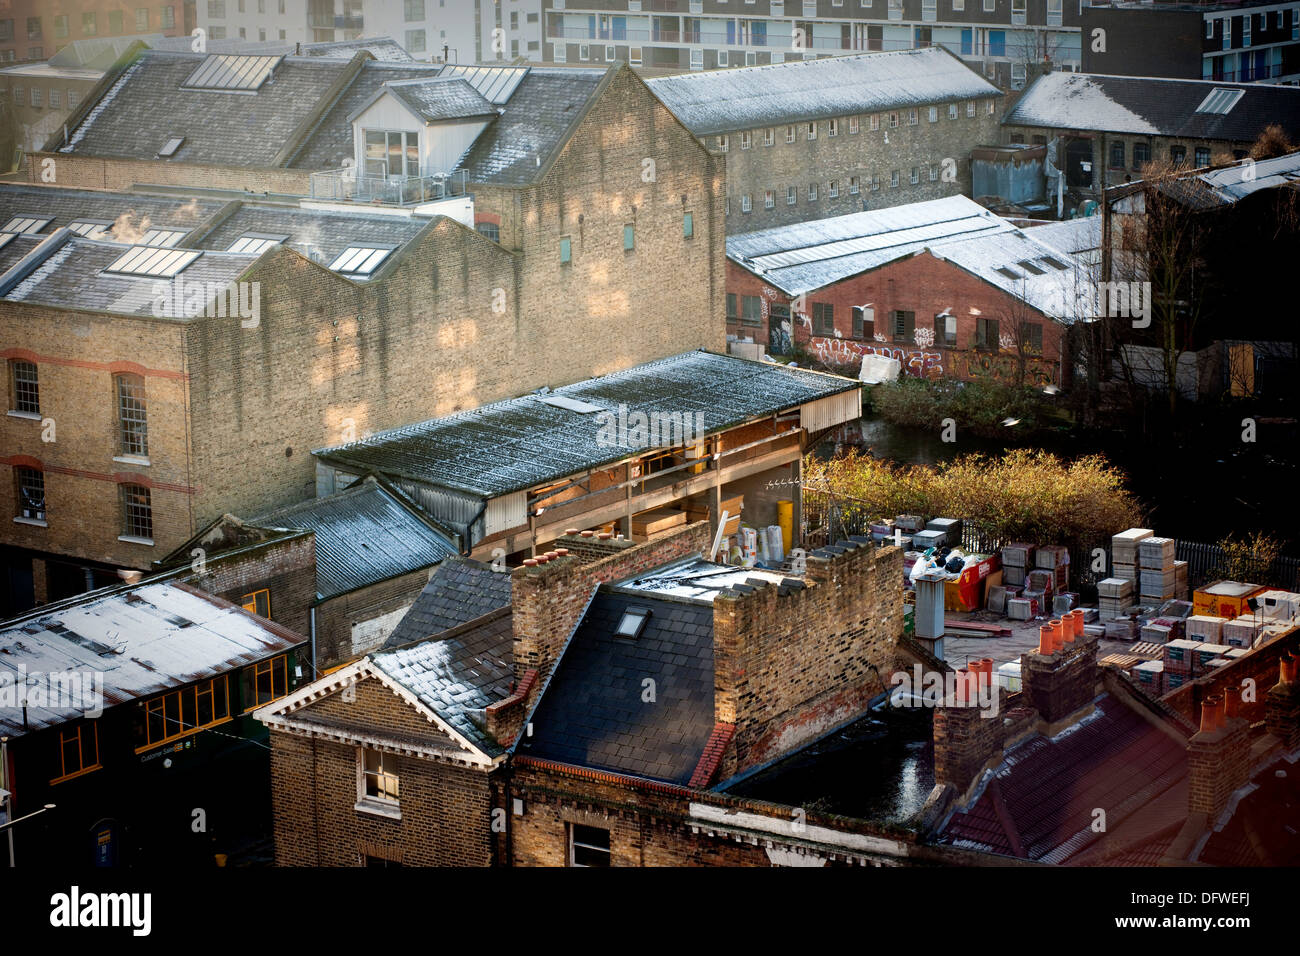 Con buardillas Tejados y chimeneas en East London, England, Reino Unido, Buardillas tejados y chimeneas en el este de Londres, Inglaterra, Reino Unido. Foto de stock